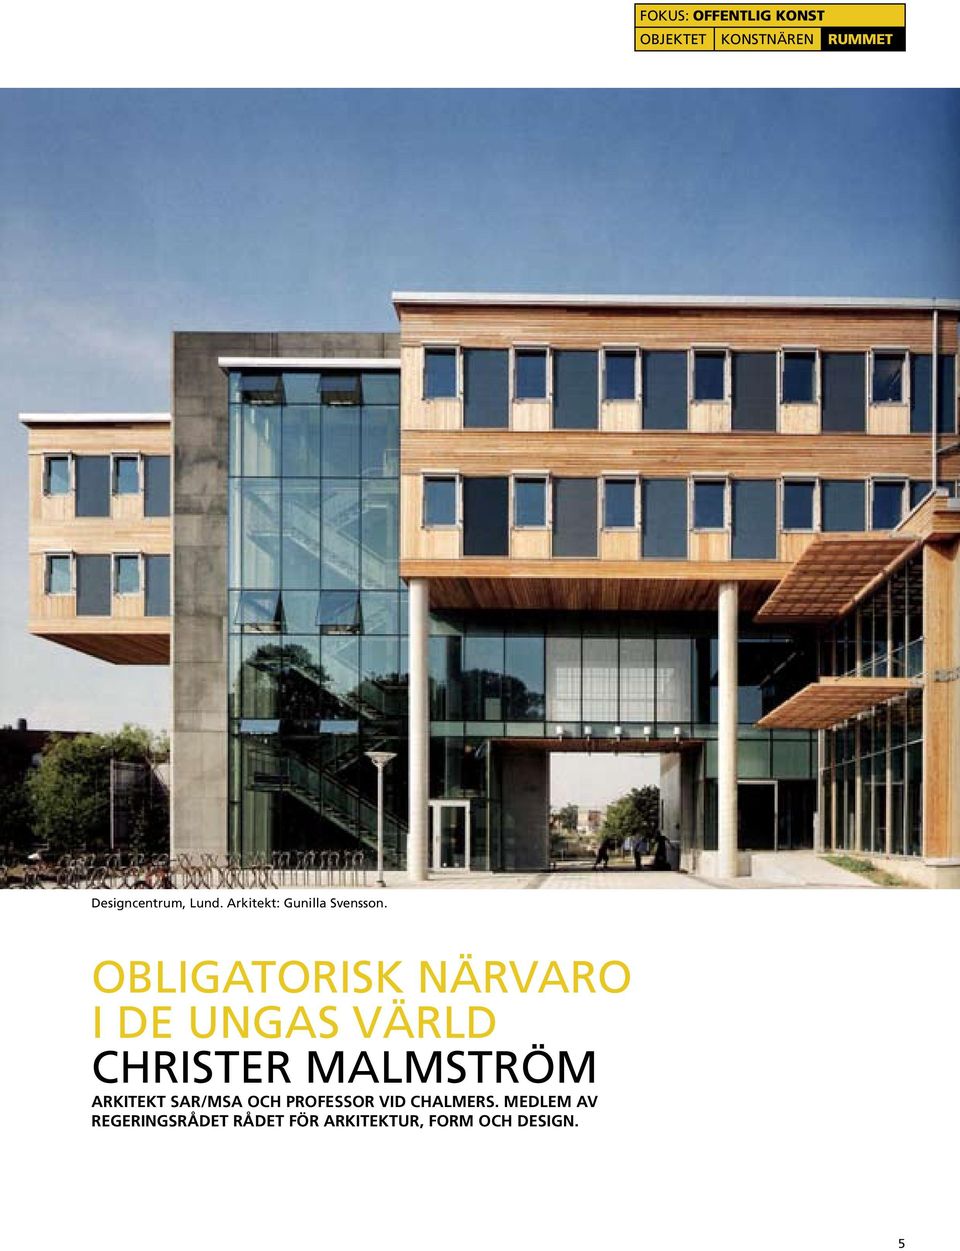 Obligatorisk närvaro i de ungas värld Christer Malmström arkitekt SAR/MSA och